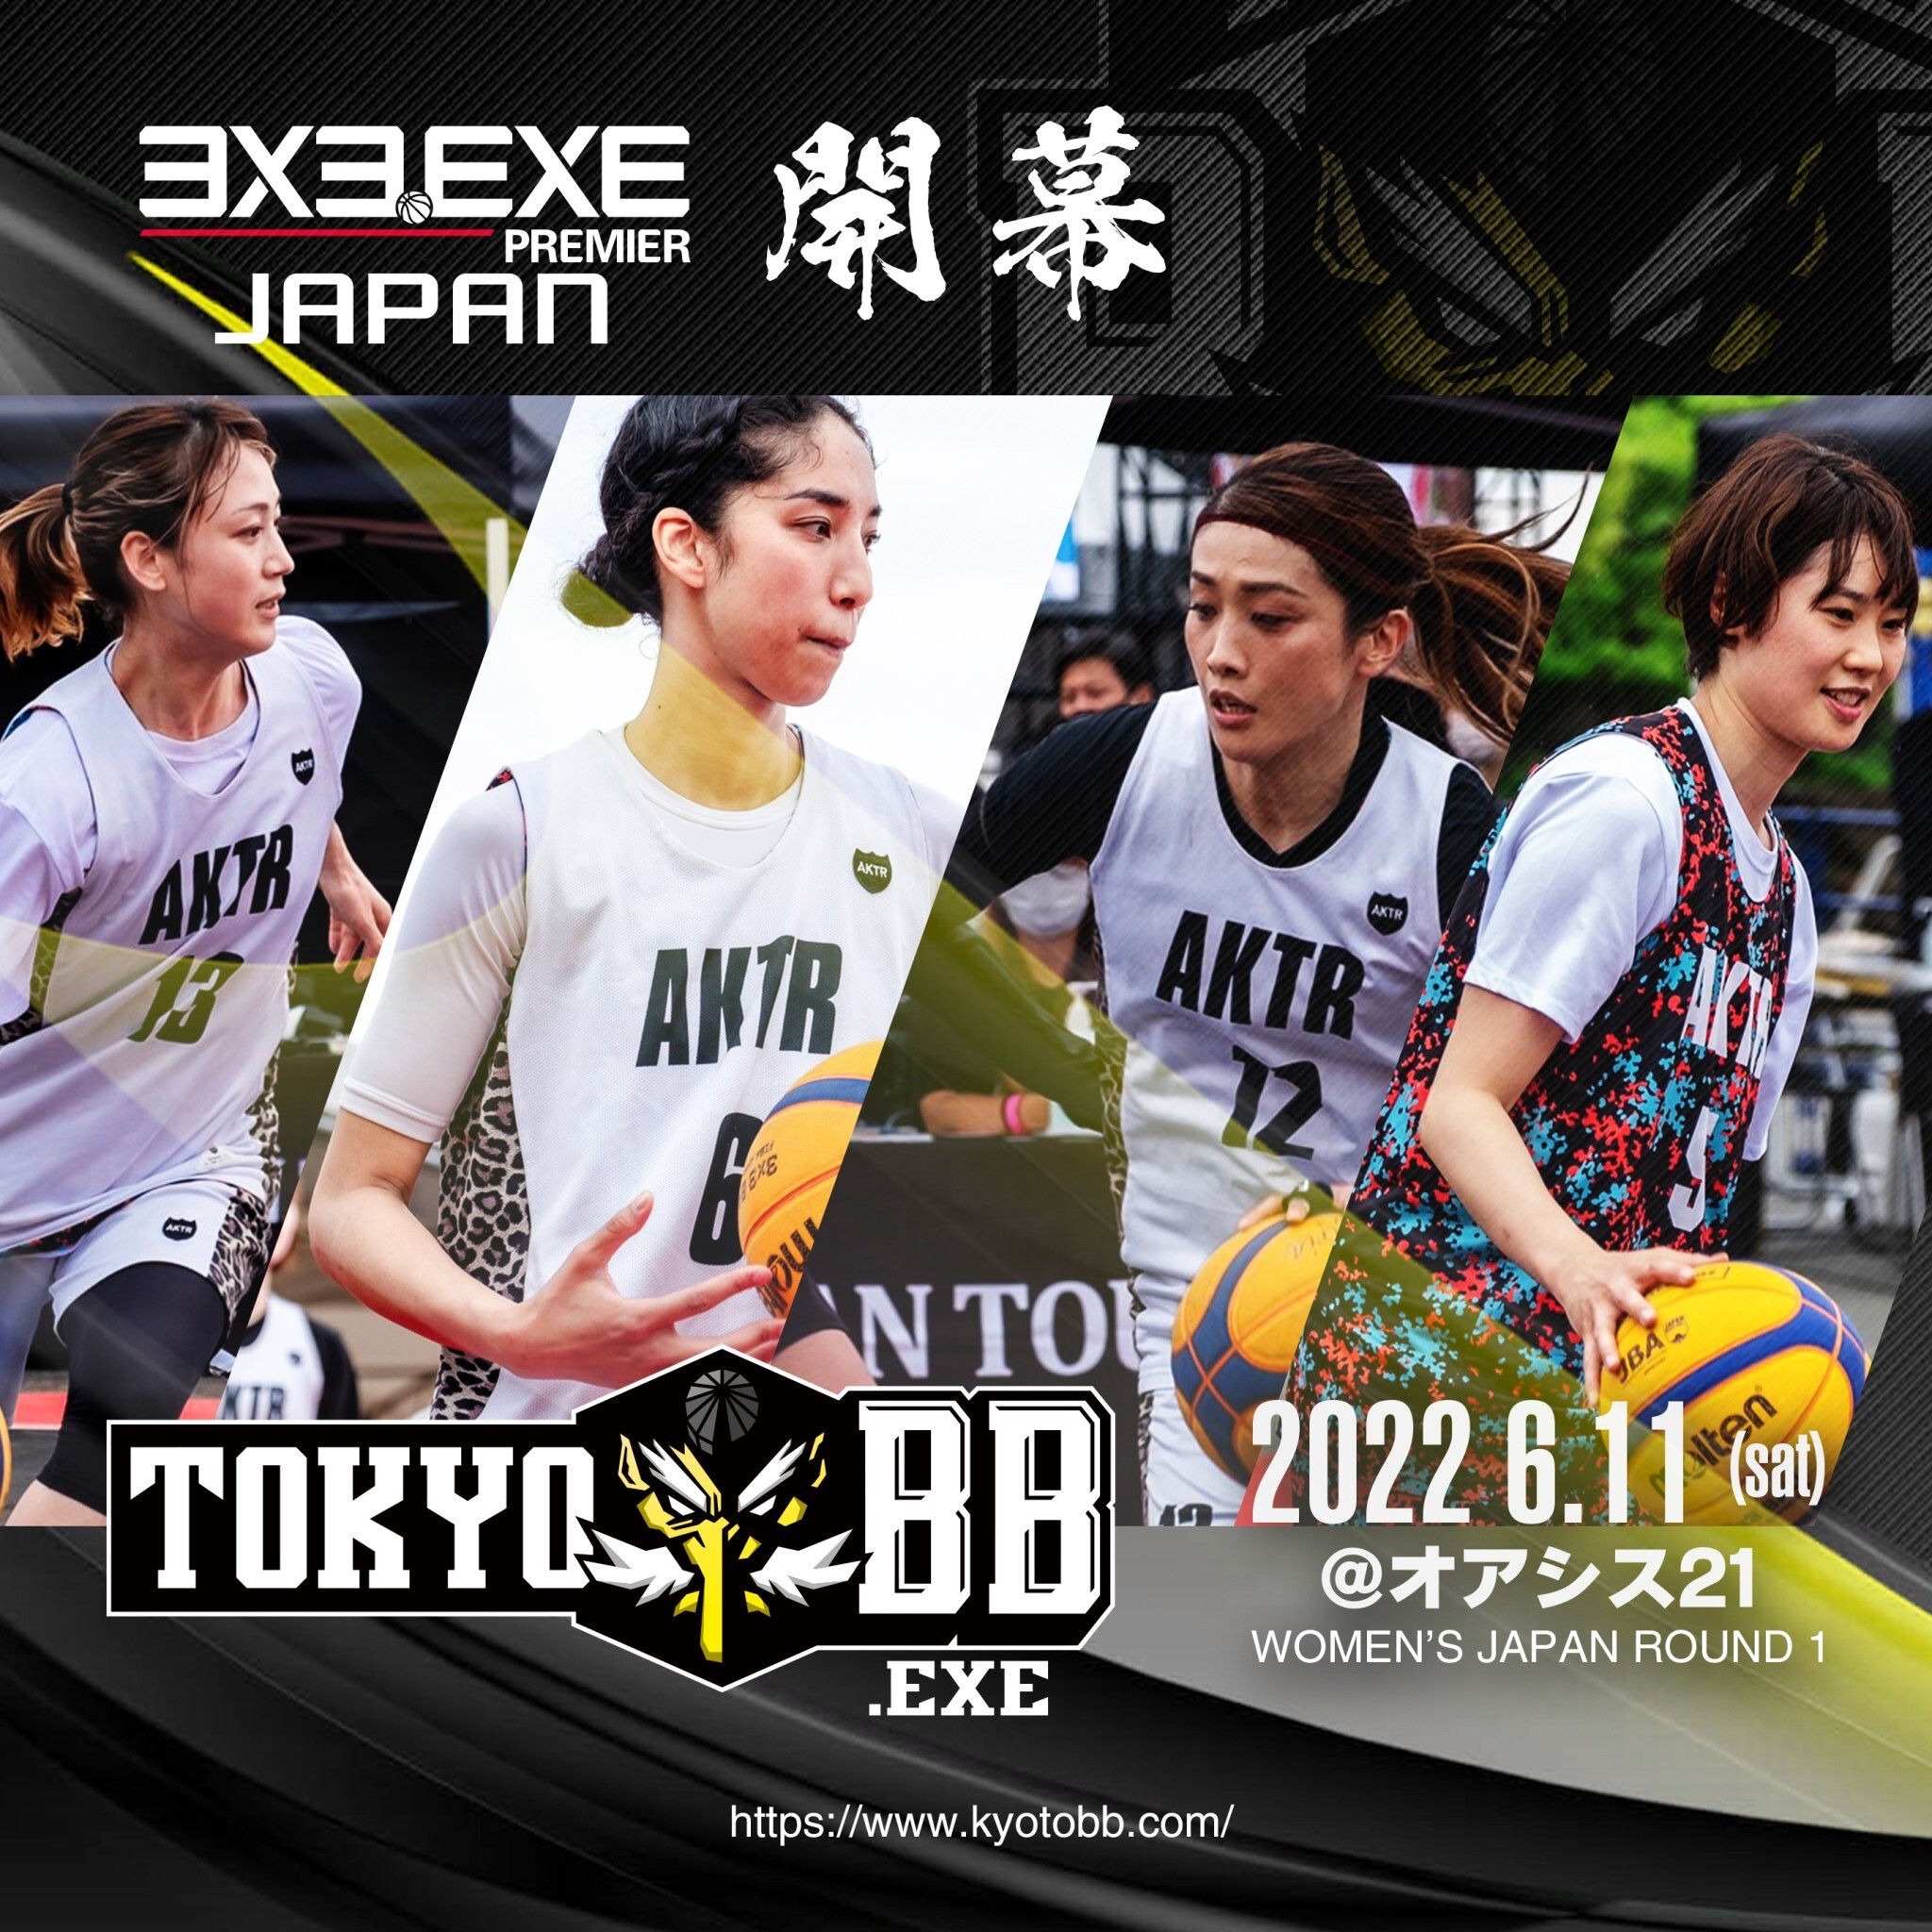 サン クロレラ 紅谷株式会社と共同で3x3女子バスケチーム Tokyo Exe を設立 株式会社サン クロレラのプレスリリース